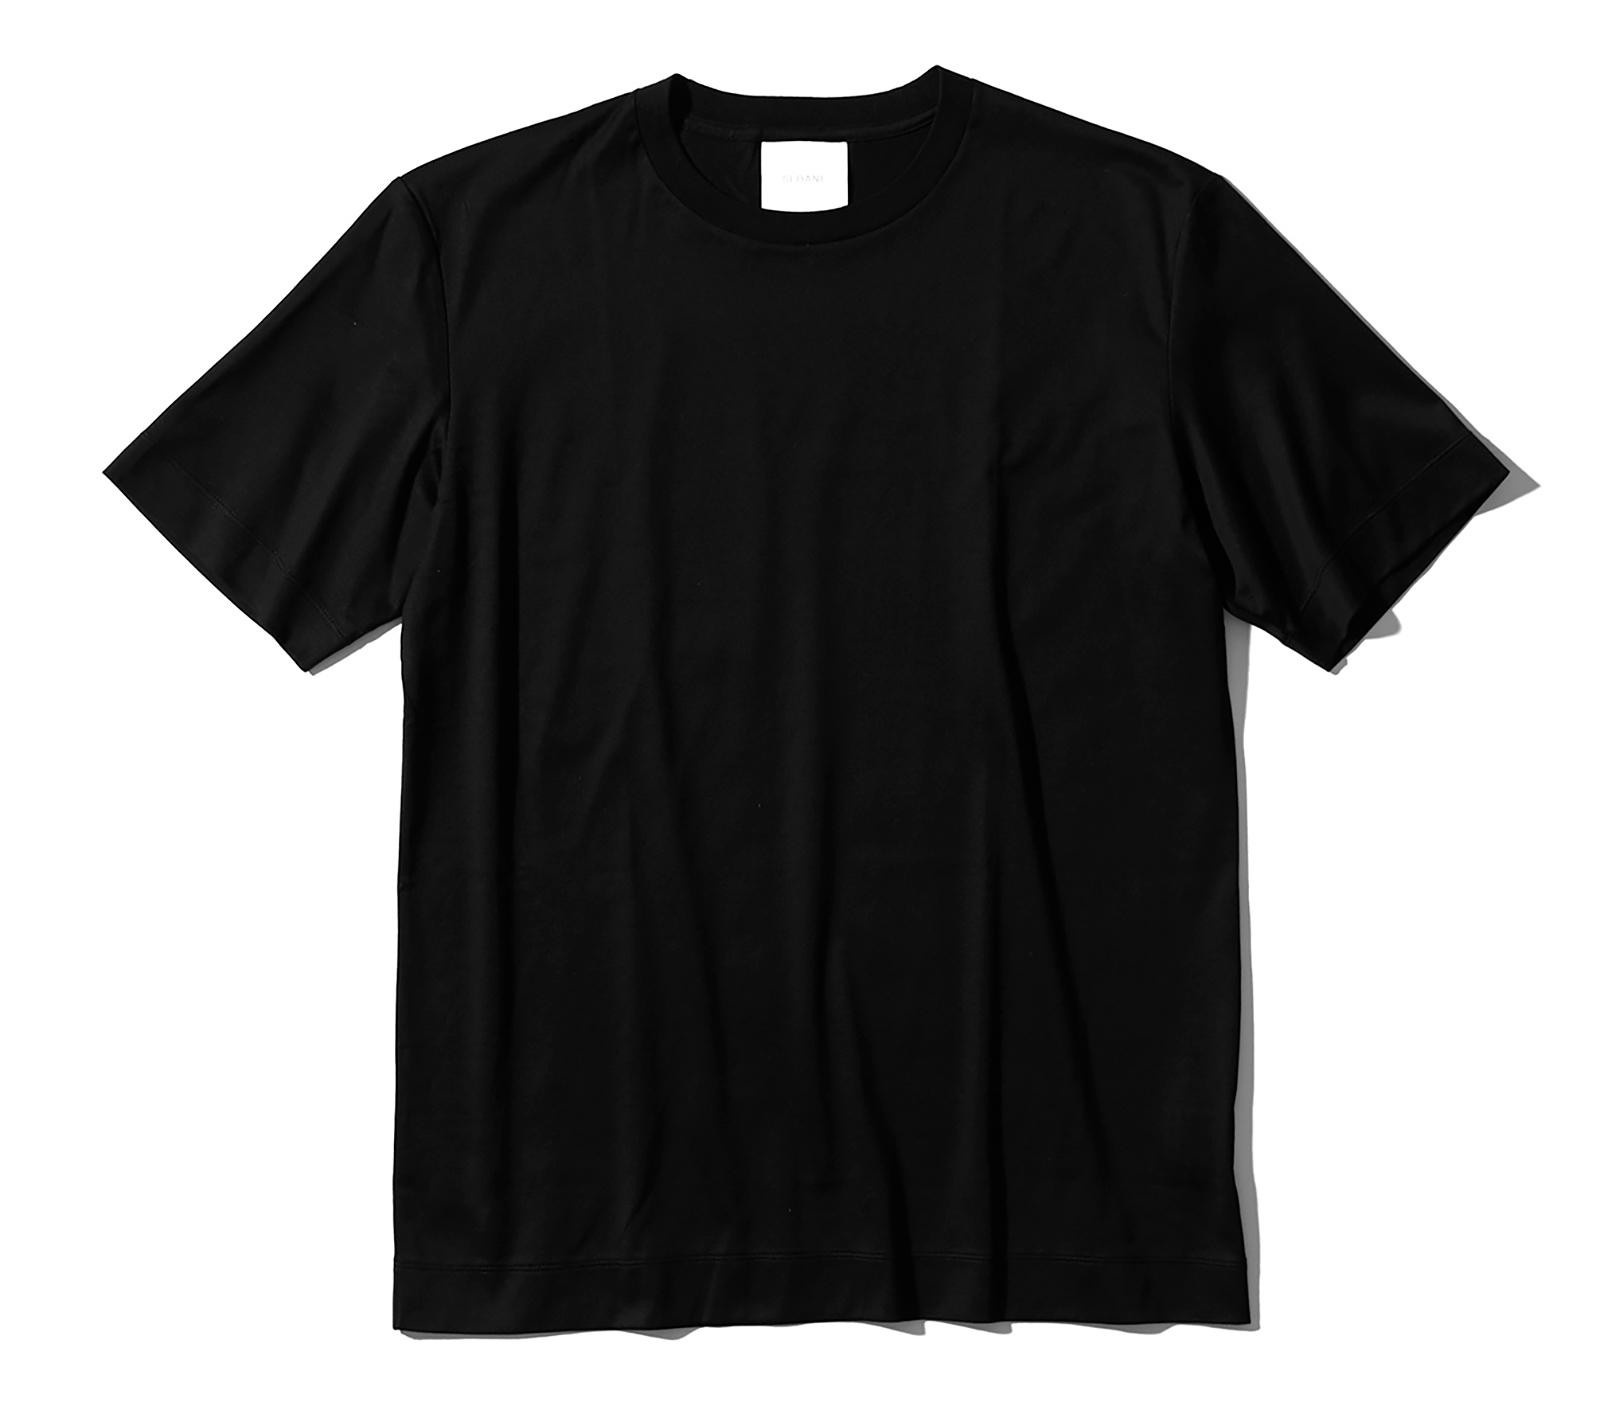 シンプルな黒Tシャツ。大人が一枚で着るならどうする? | メンズ ...